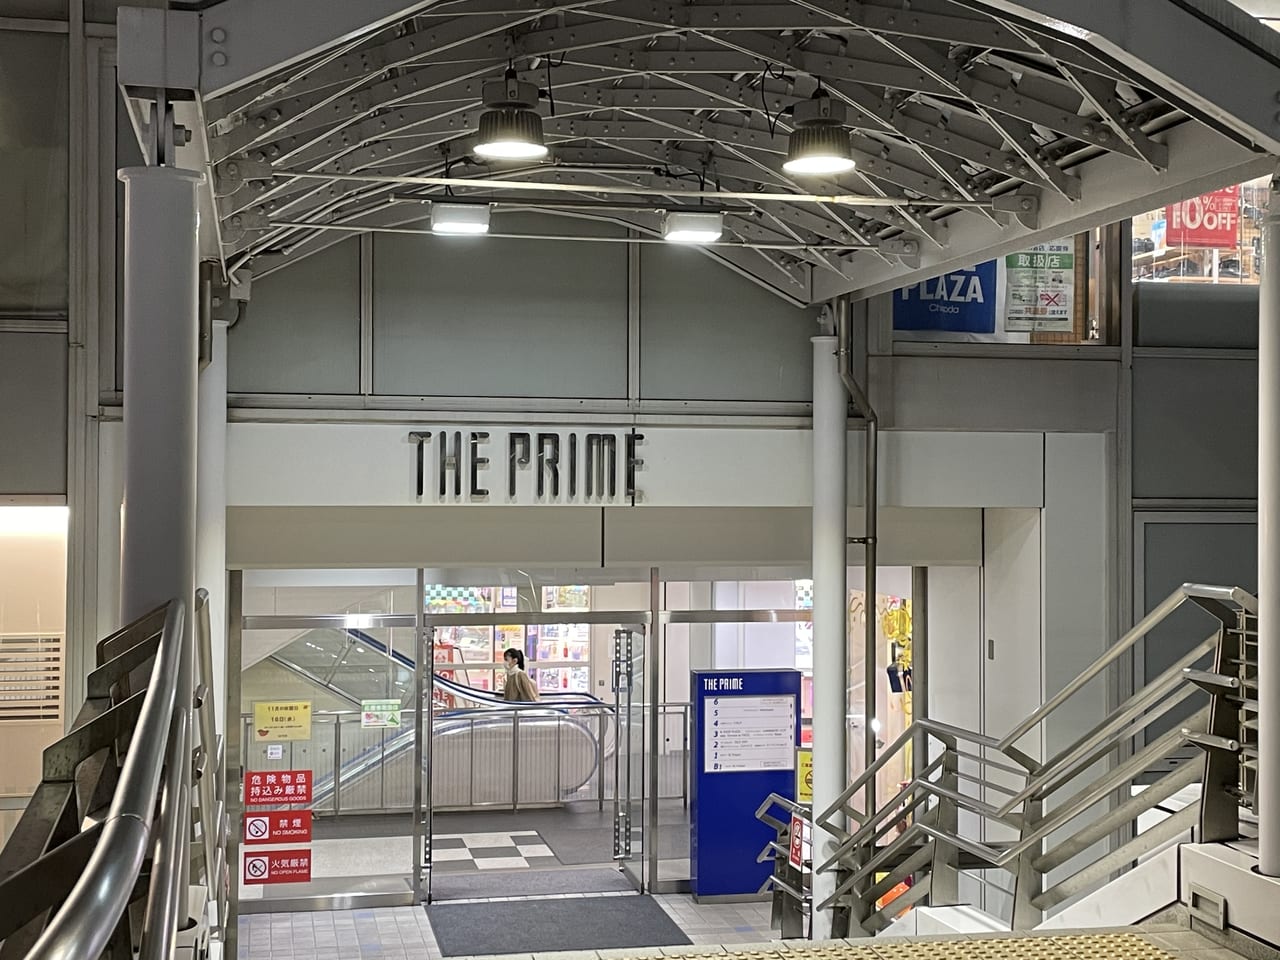 横須賀市 The Prime にゲームセンターsilk Hat横須賀中央店がオープンしていました 号外net 横須賀市 三浦市